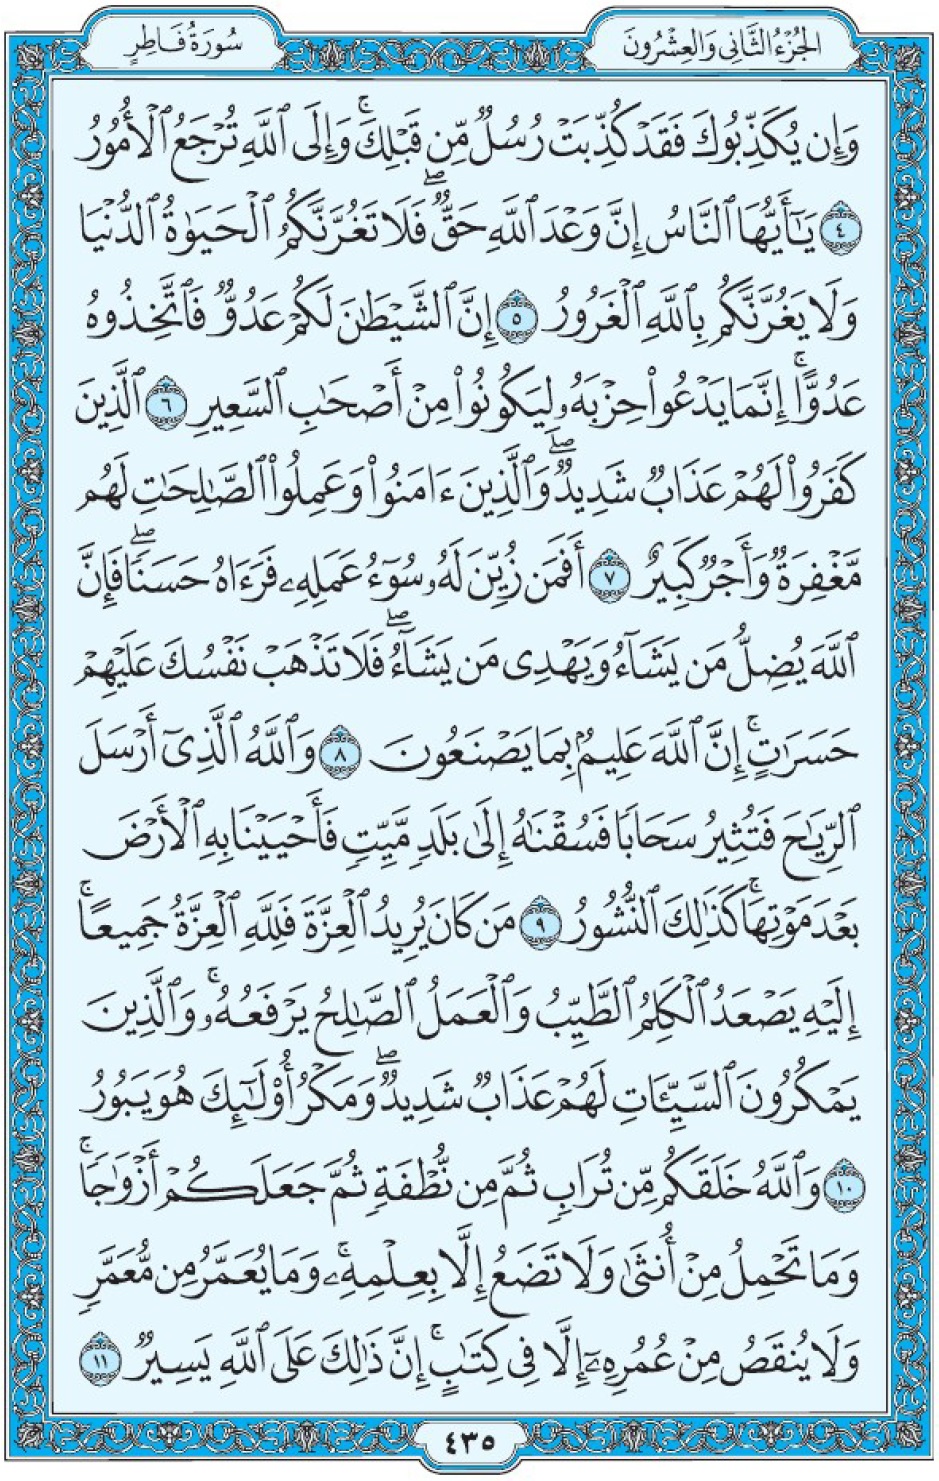 Коран Мединский мусхаф страница 435, Фатыр аят 4-11